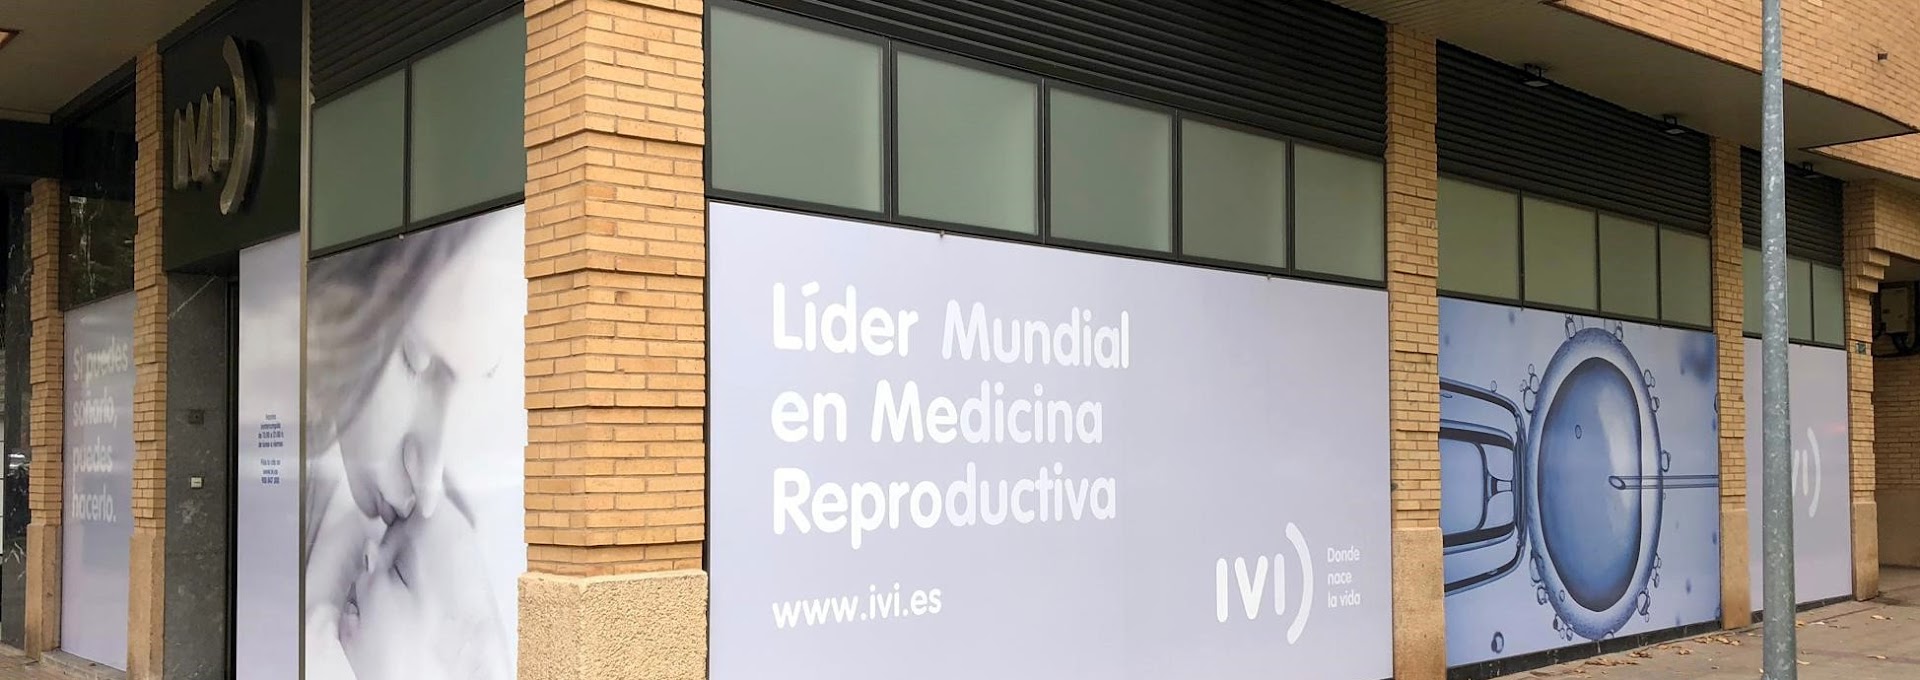 IVI Logroño - Clínica de Fertilidad y Reproducción Asistida